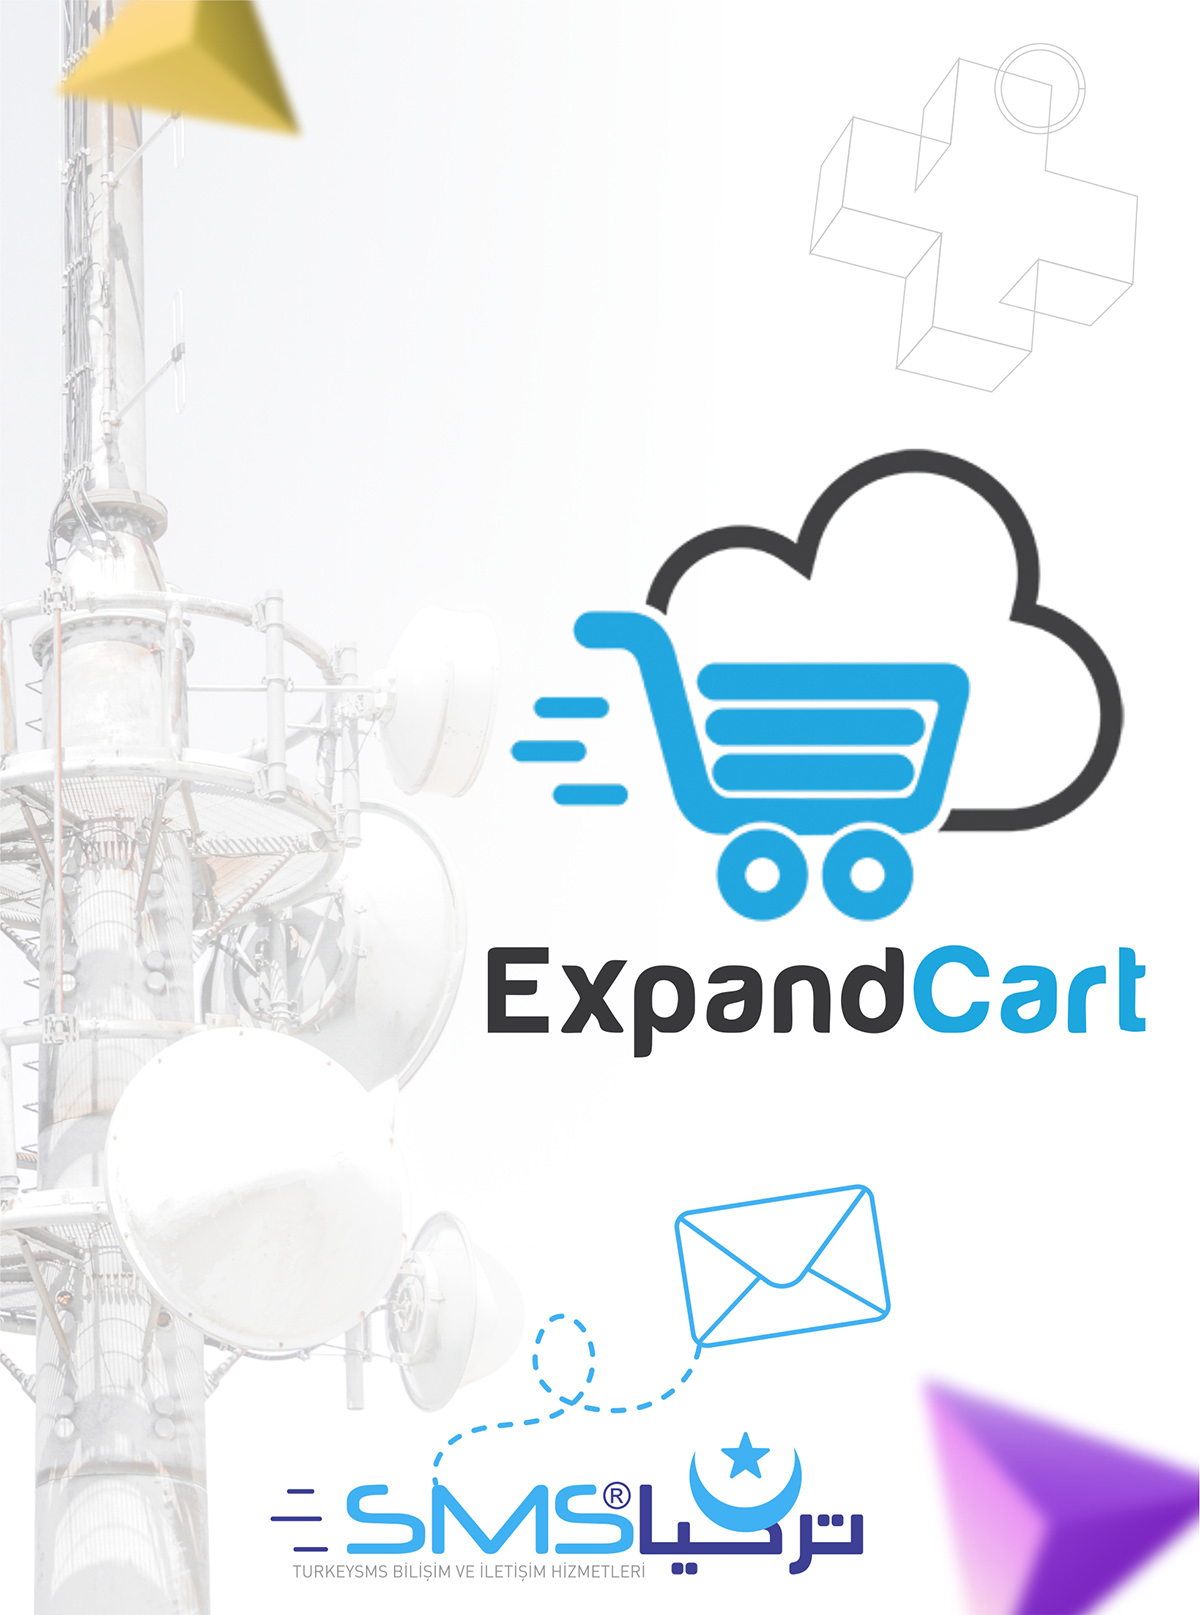 Expand cart